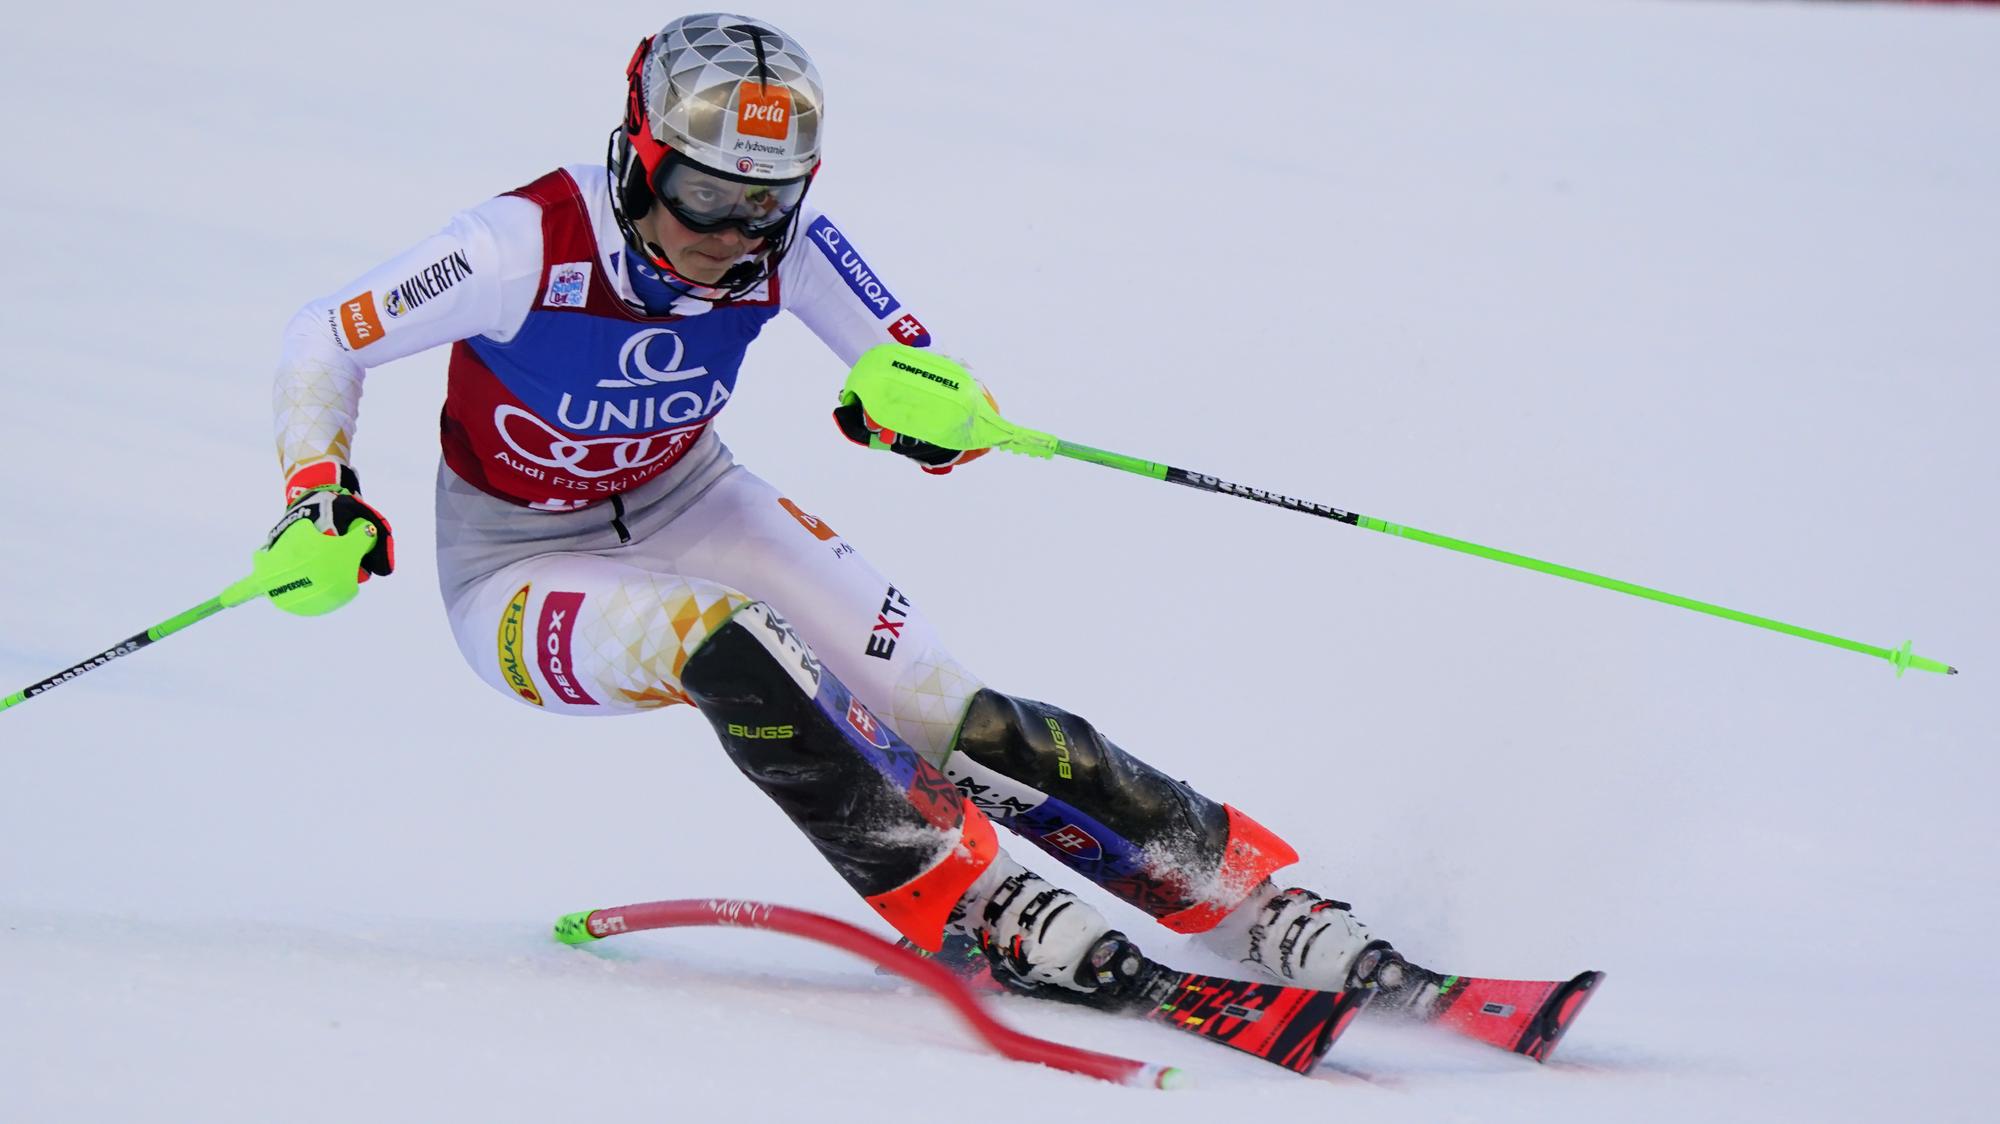 LIVE Petra Vlhová dnes 1 kolo - slalom / Levi | Šport.sk